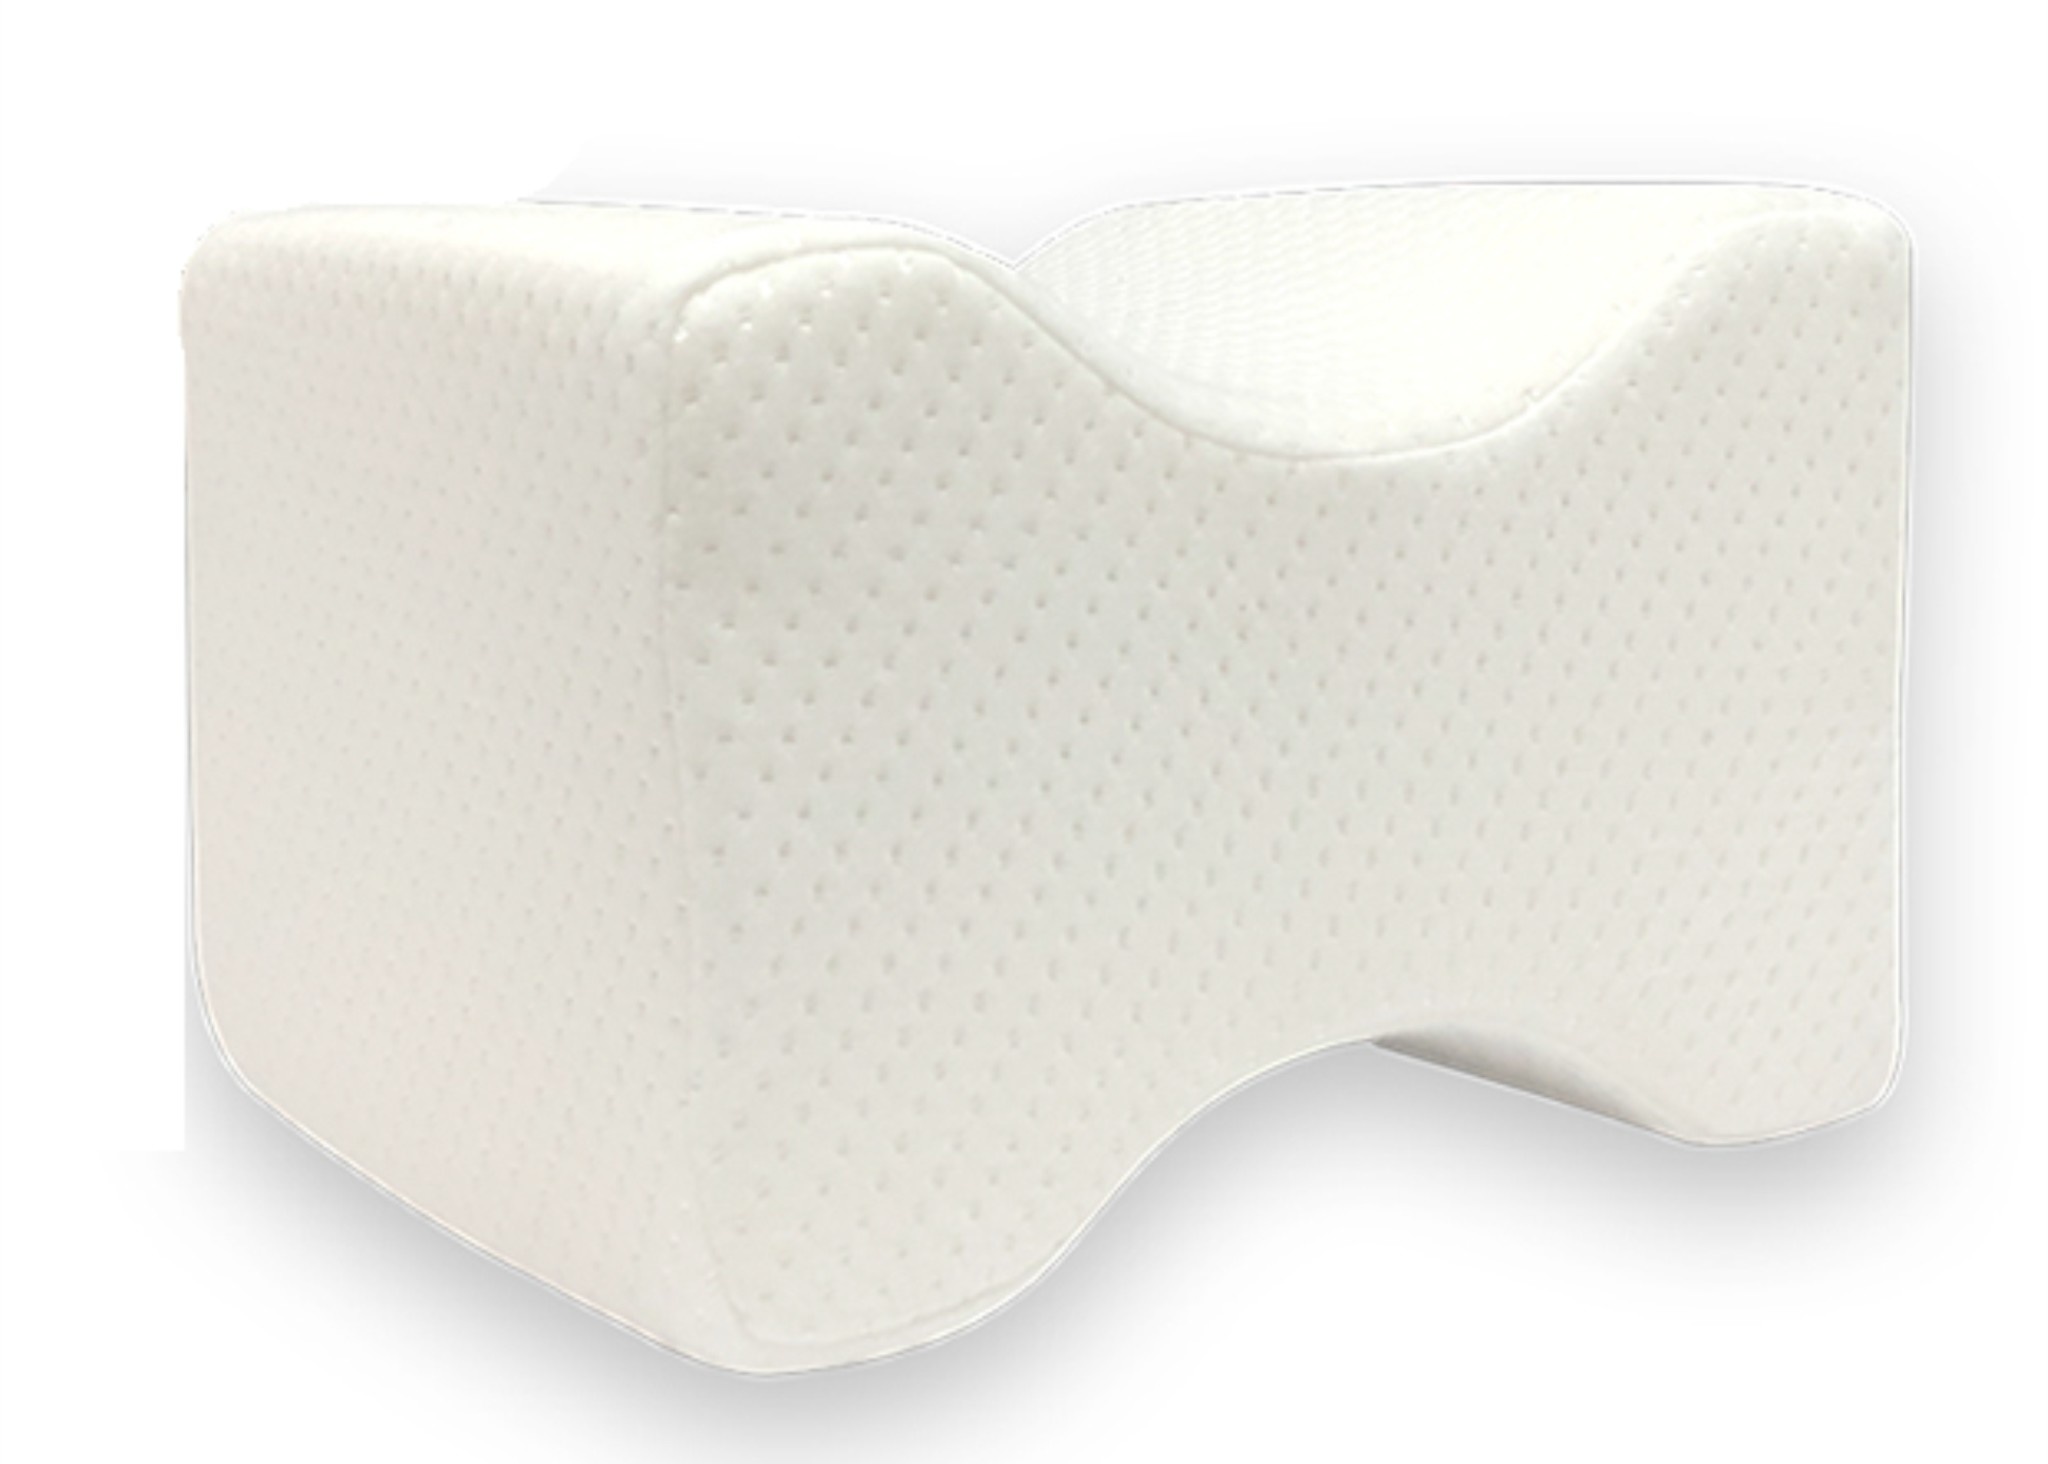 SOHOBLOO'S Foam Knee Pillow